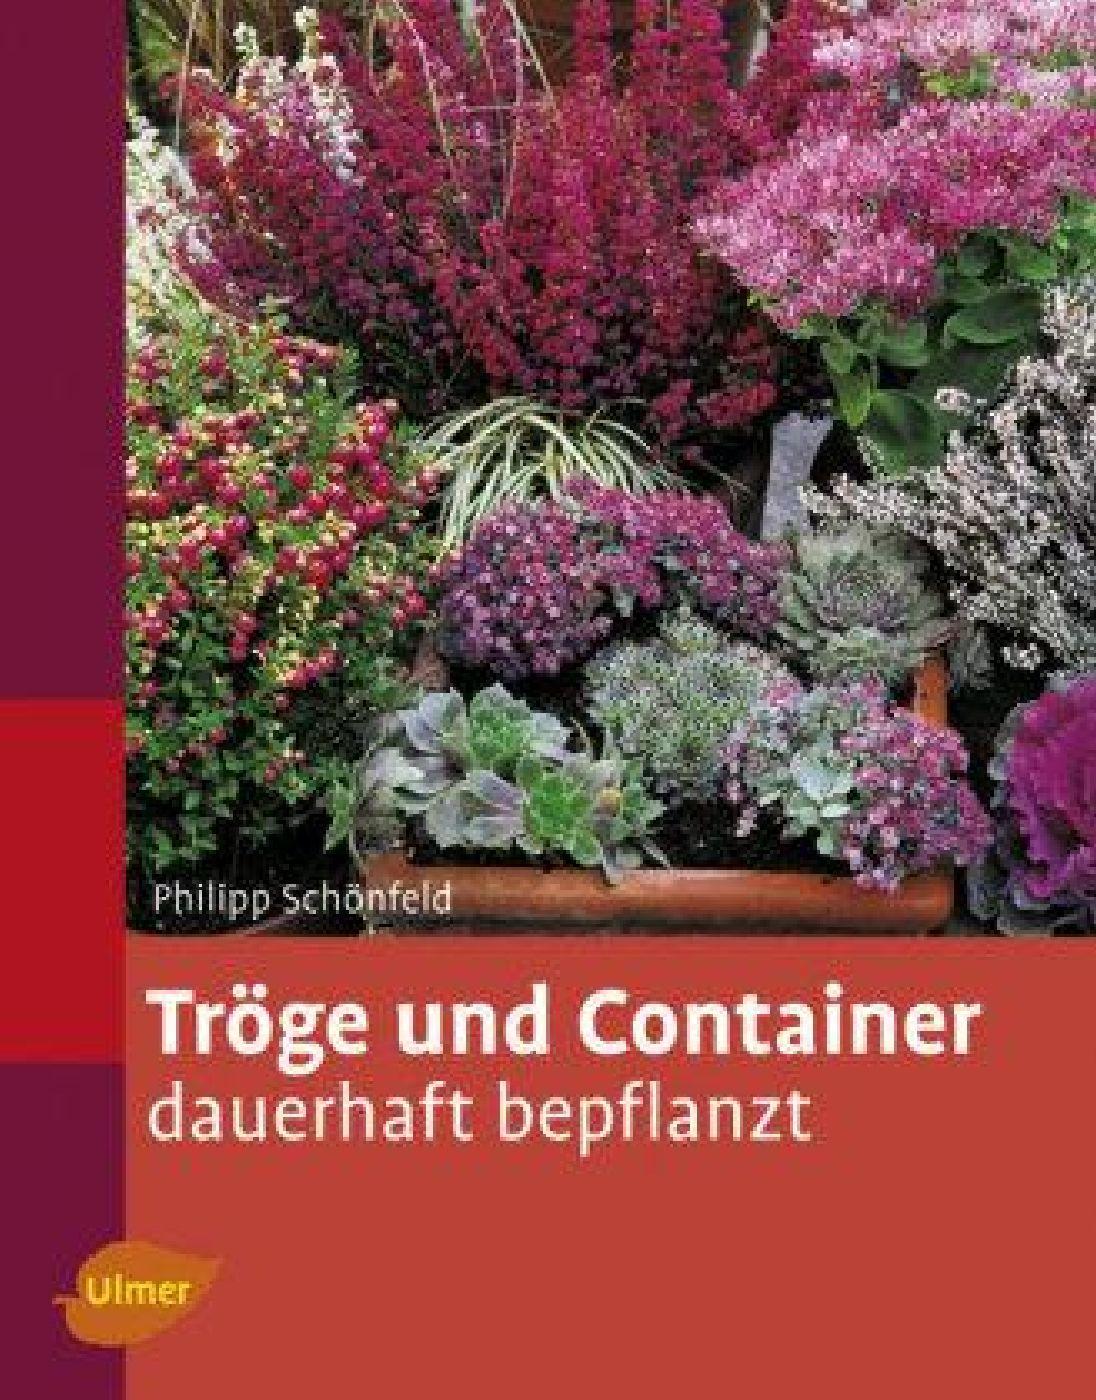 9578 Trge und Container dauerhaft bepflanzen 15e29d f 900x900 2x